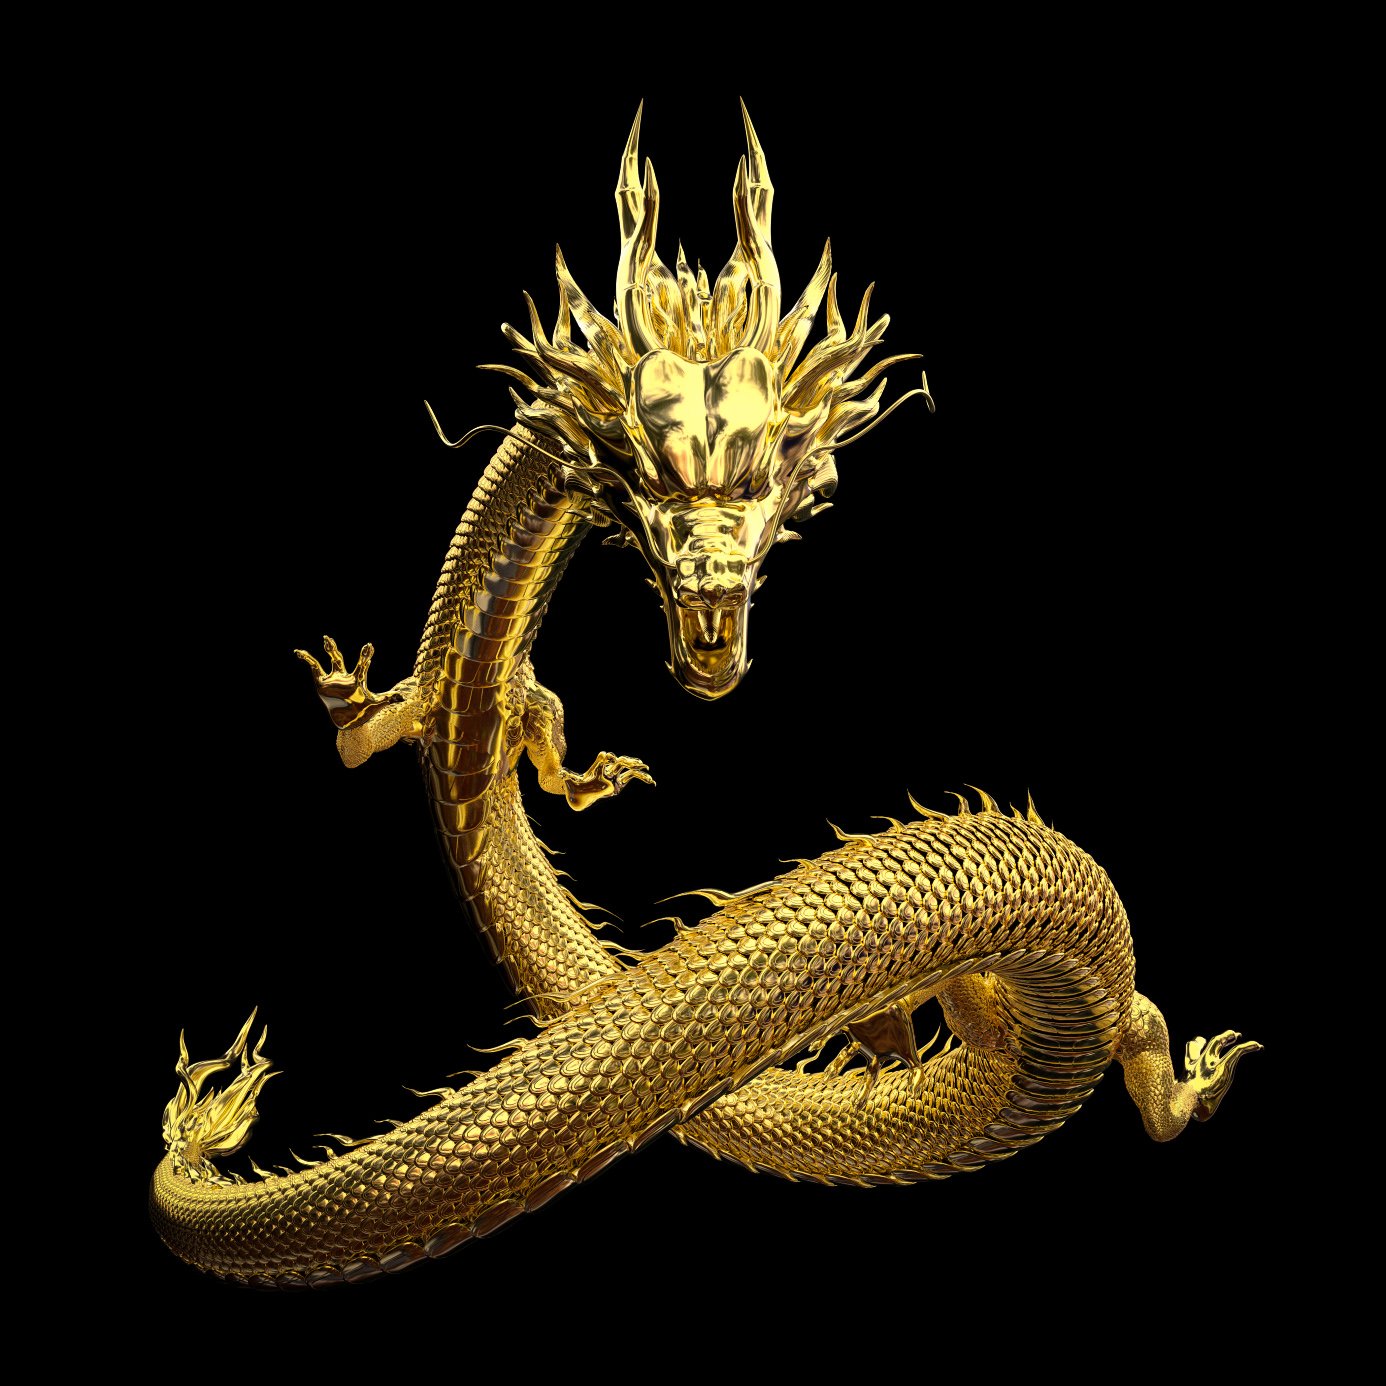 ჩინური დრაკონი, ასევე ცნობილი როგორც ფილტვი, არის ლეგენდარული არსება ჩინურ მითოლოგიაში.